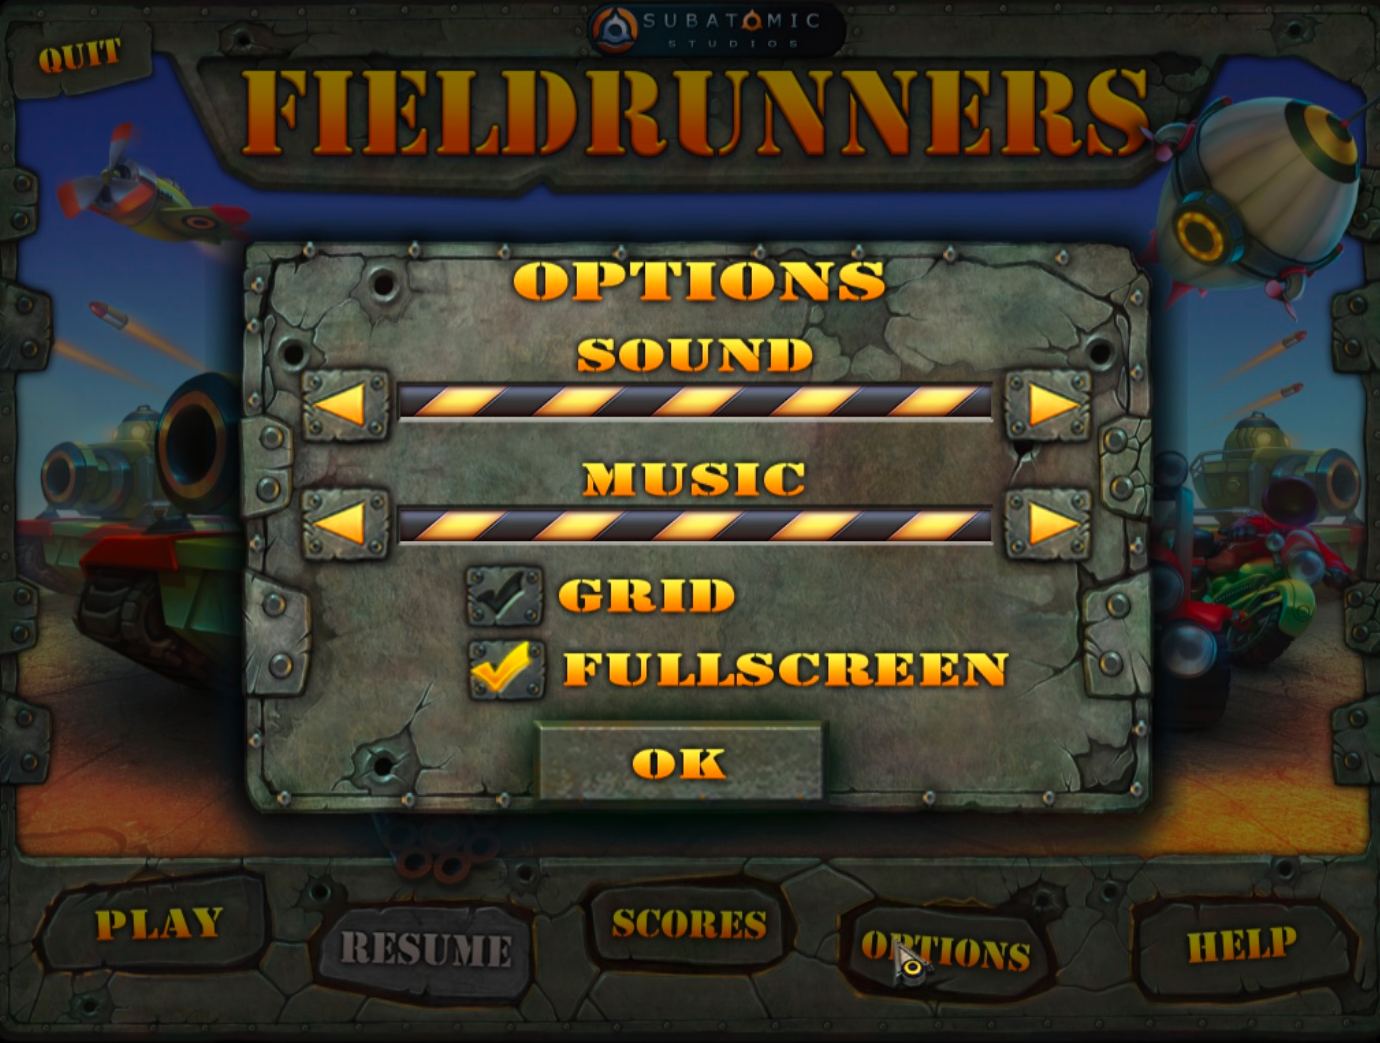 Fieldrunners 1.0 : Options